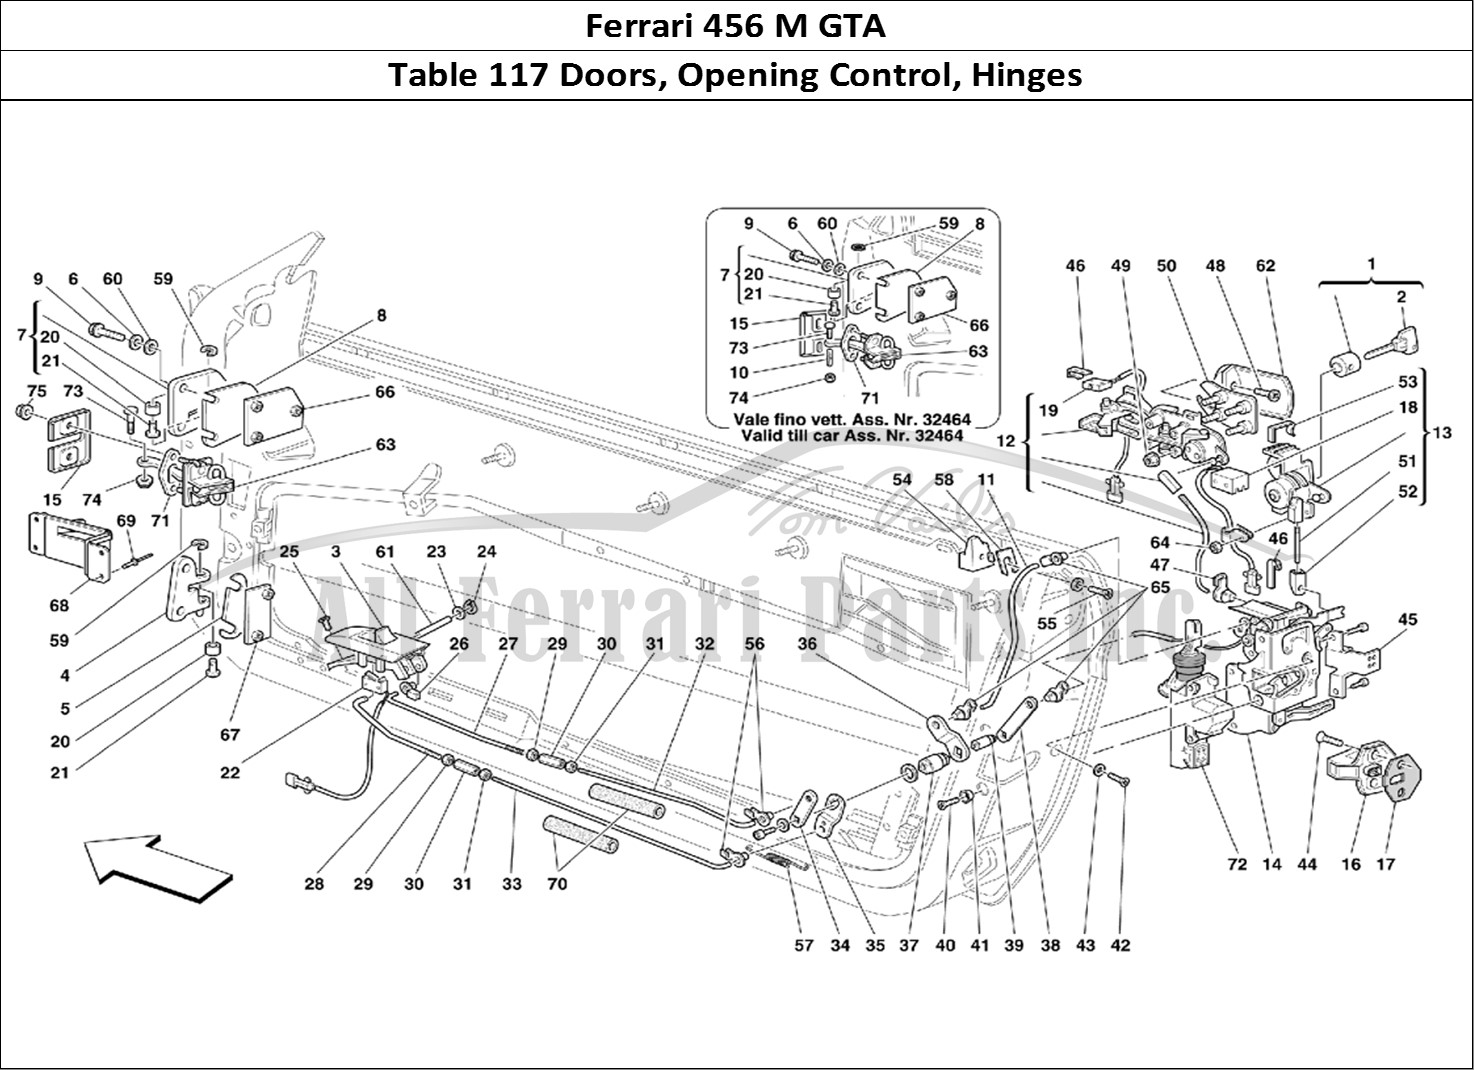 Ferrari Parts Ferrari 456 M GT Page 117 Doors - Opening Control a